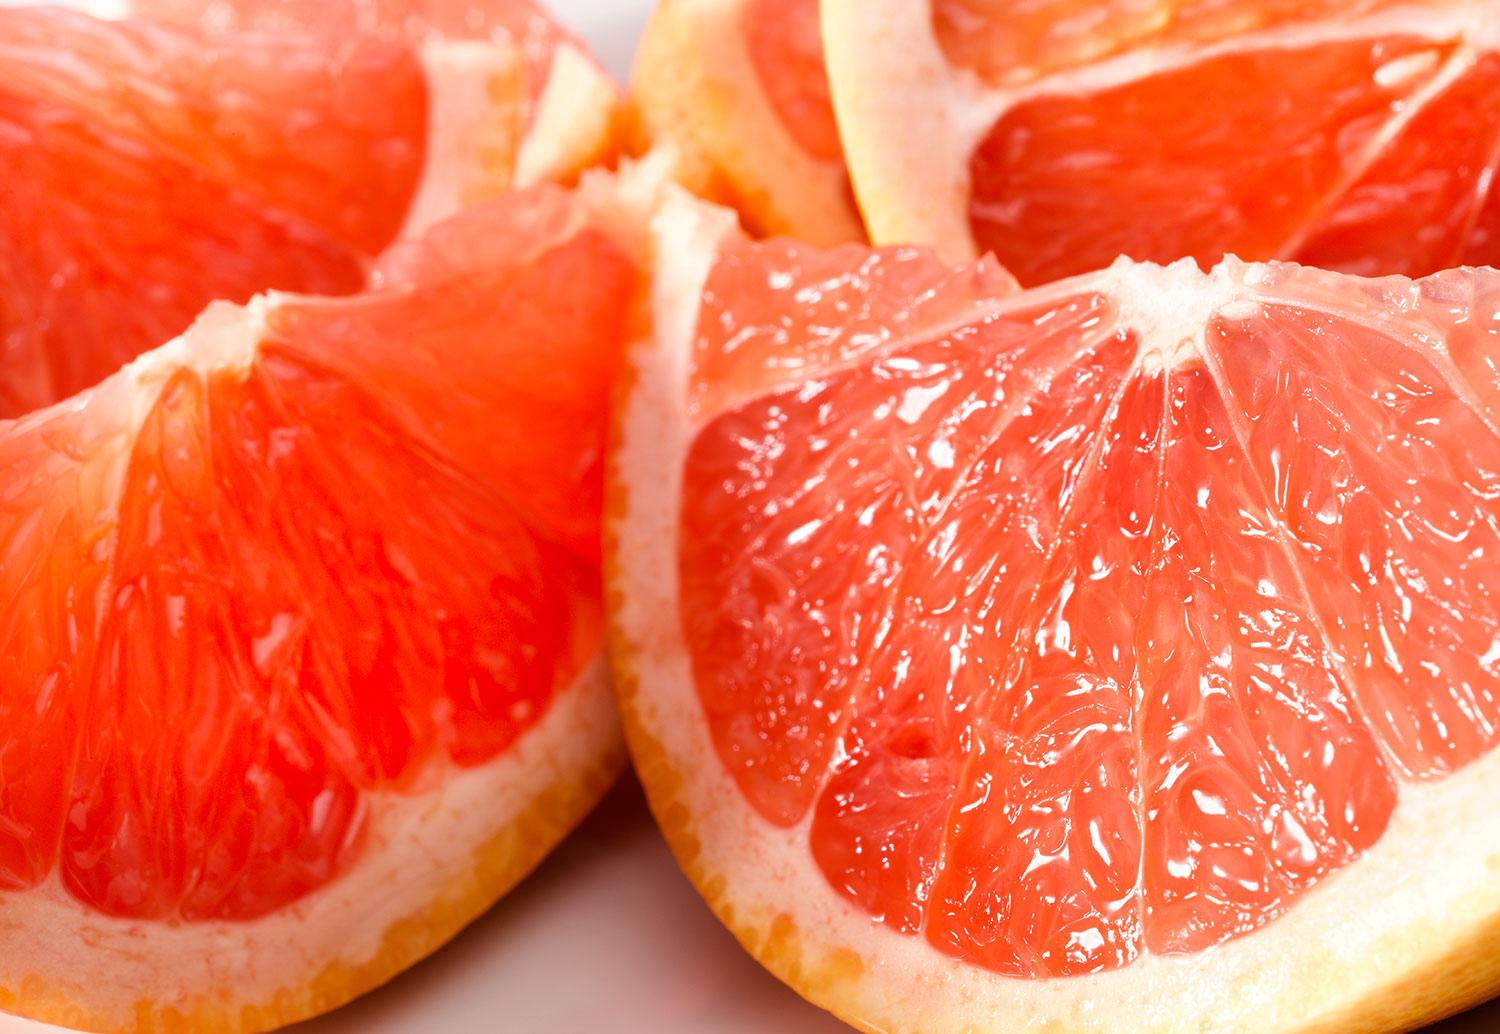 Grapefrukt  är bra för vikten och blodsockret, enligt studie